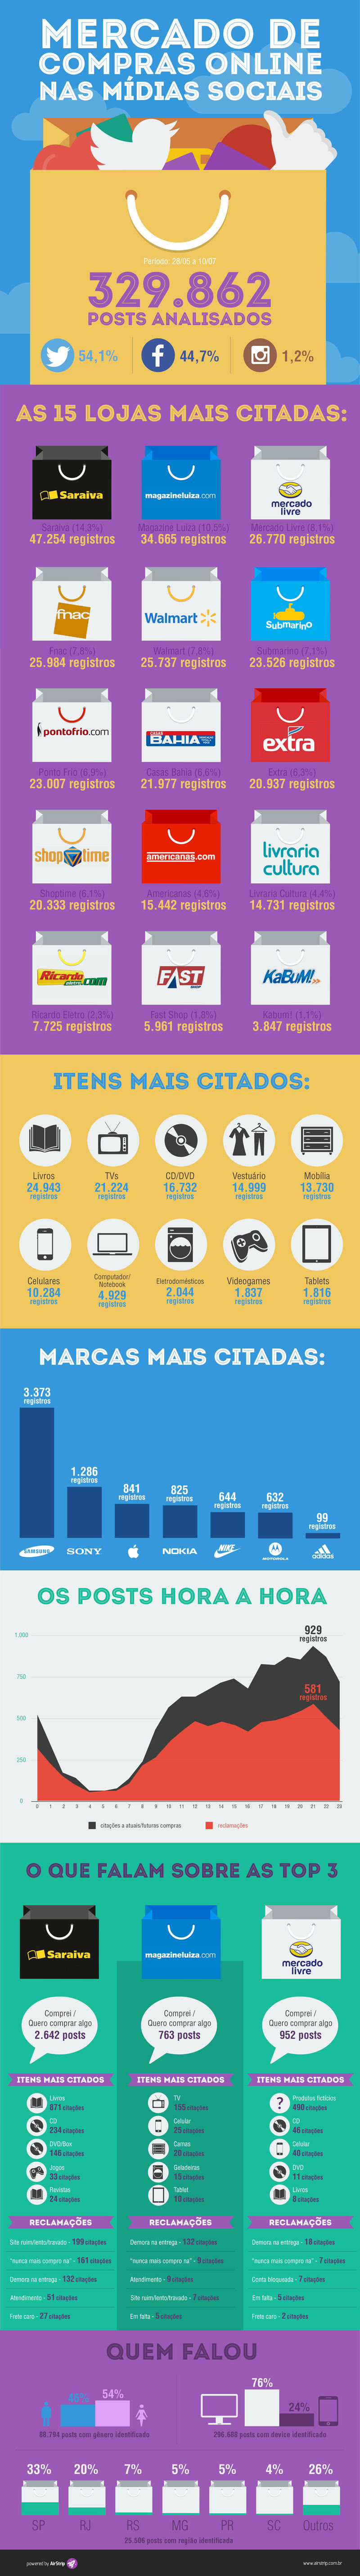 Saraiva e Magazine Luiza são os e-commerces mais citados nas redes sociais